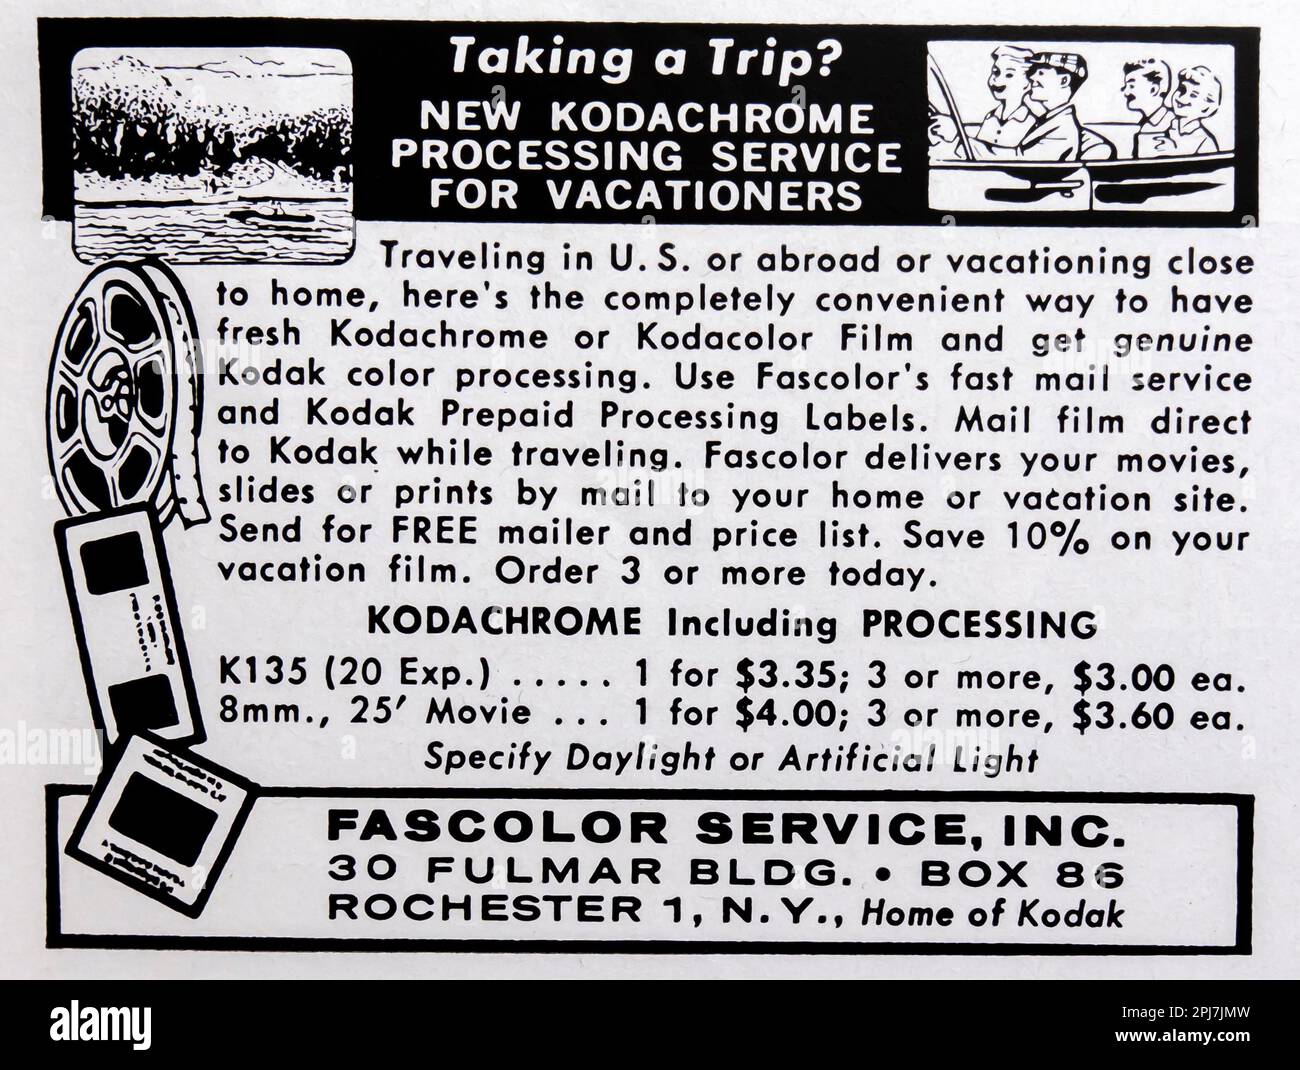 Kodachrome servizio di elaborazione per vacanzieri - Fascolor NY pubblicità in una rivista NatGeo, luglio 1958 Foto Stock